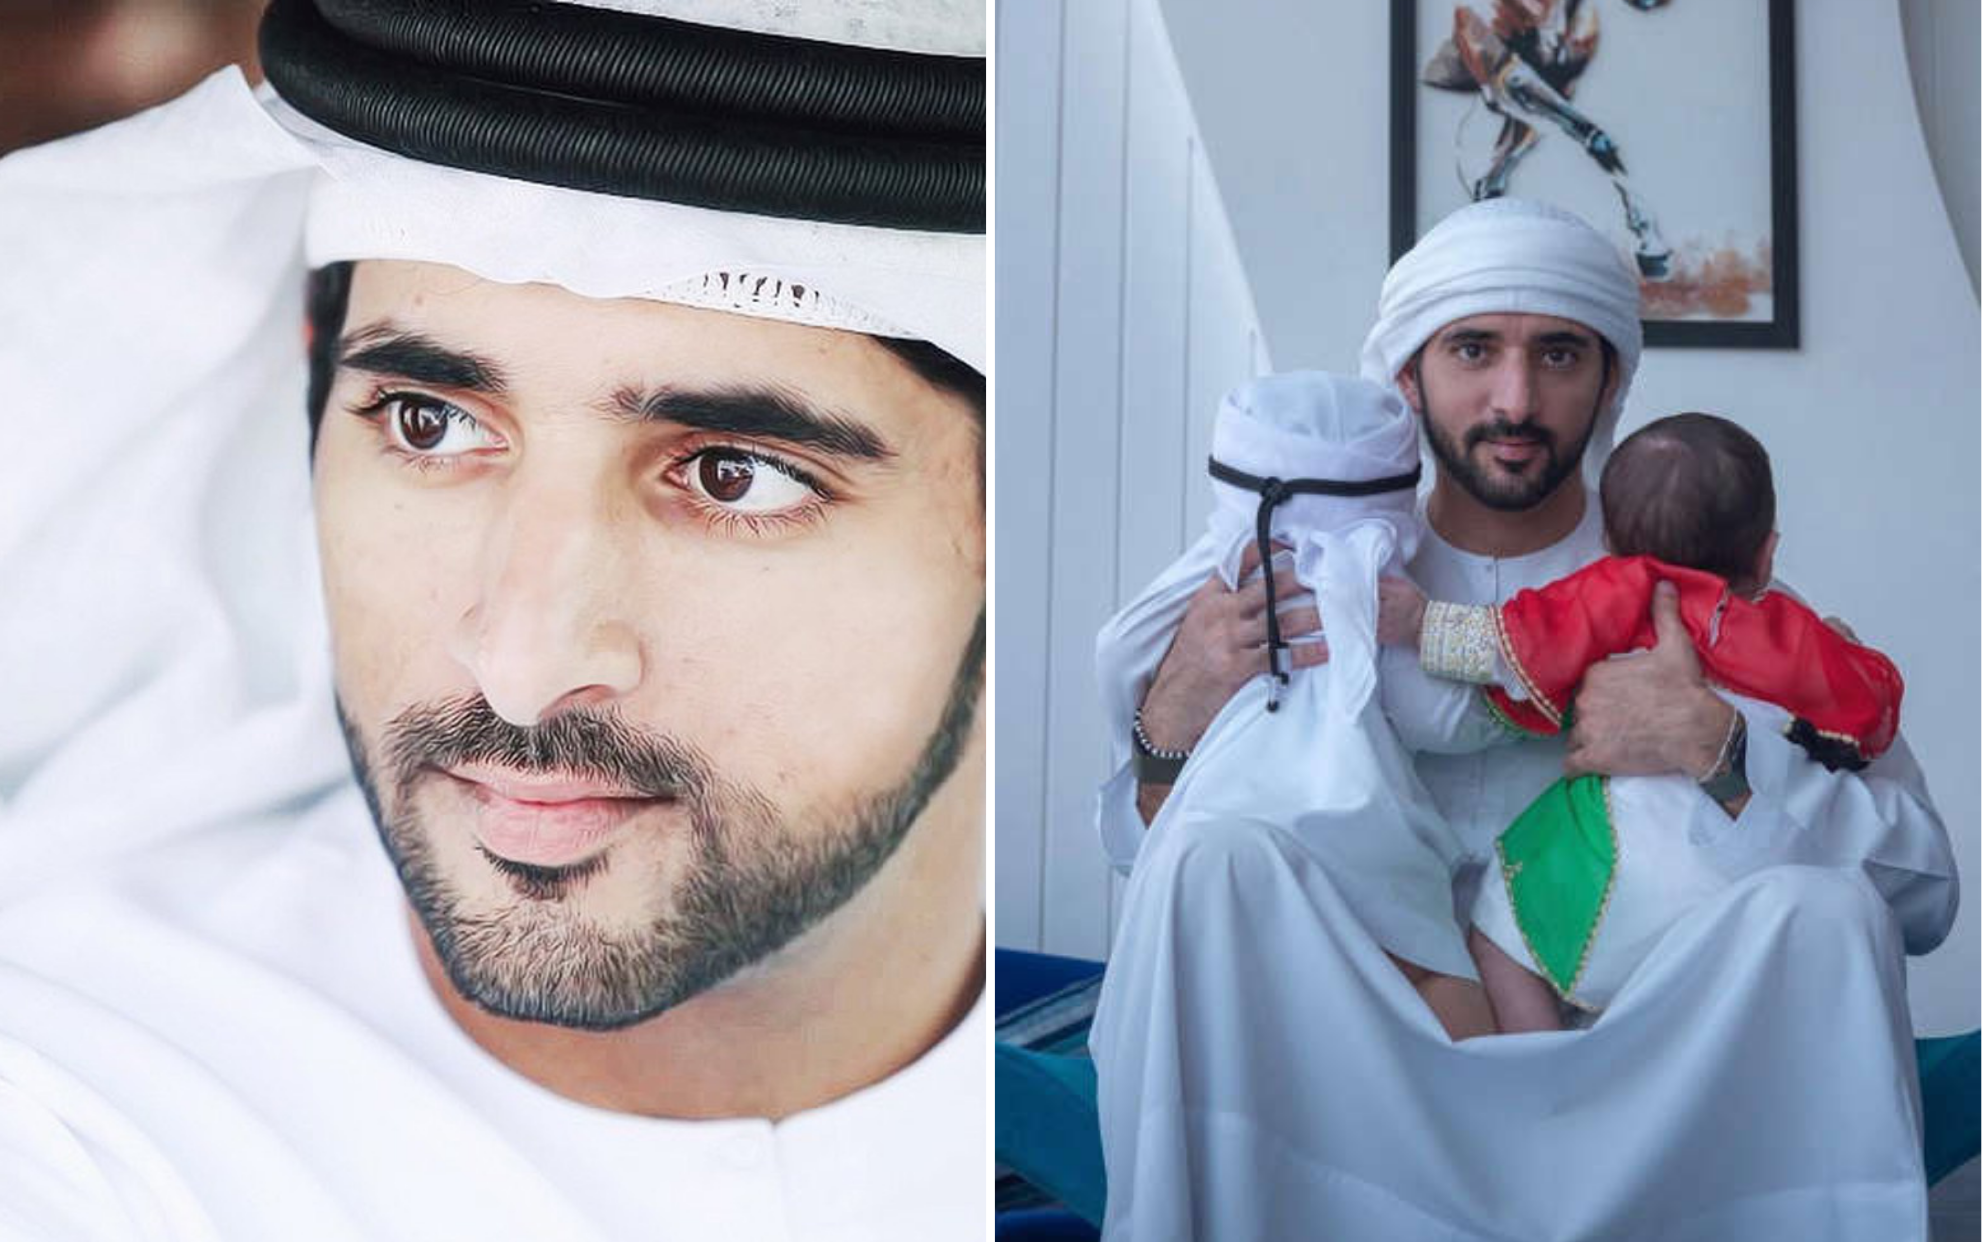 Thái tử đẹp trai nhất Dubai làm triệu fan nữ ngỡ ngàng khi khoe hai con sinh đôi, danh tính người vợ bí ẩn càng gây tò mò